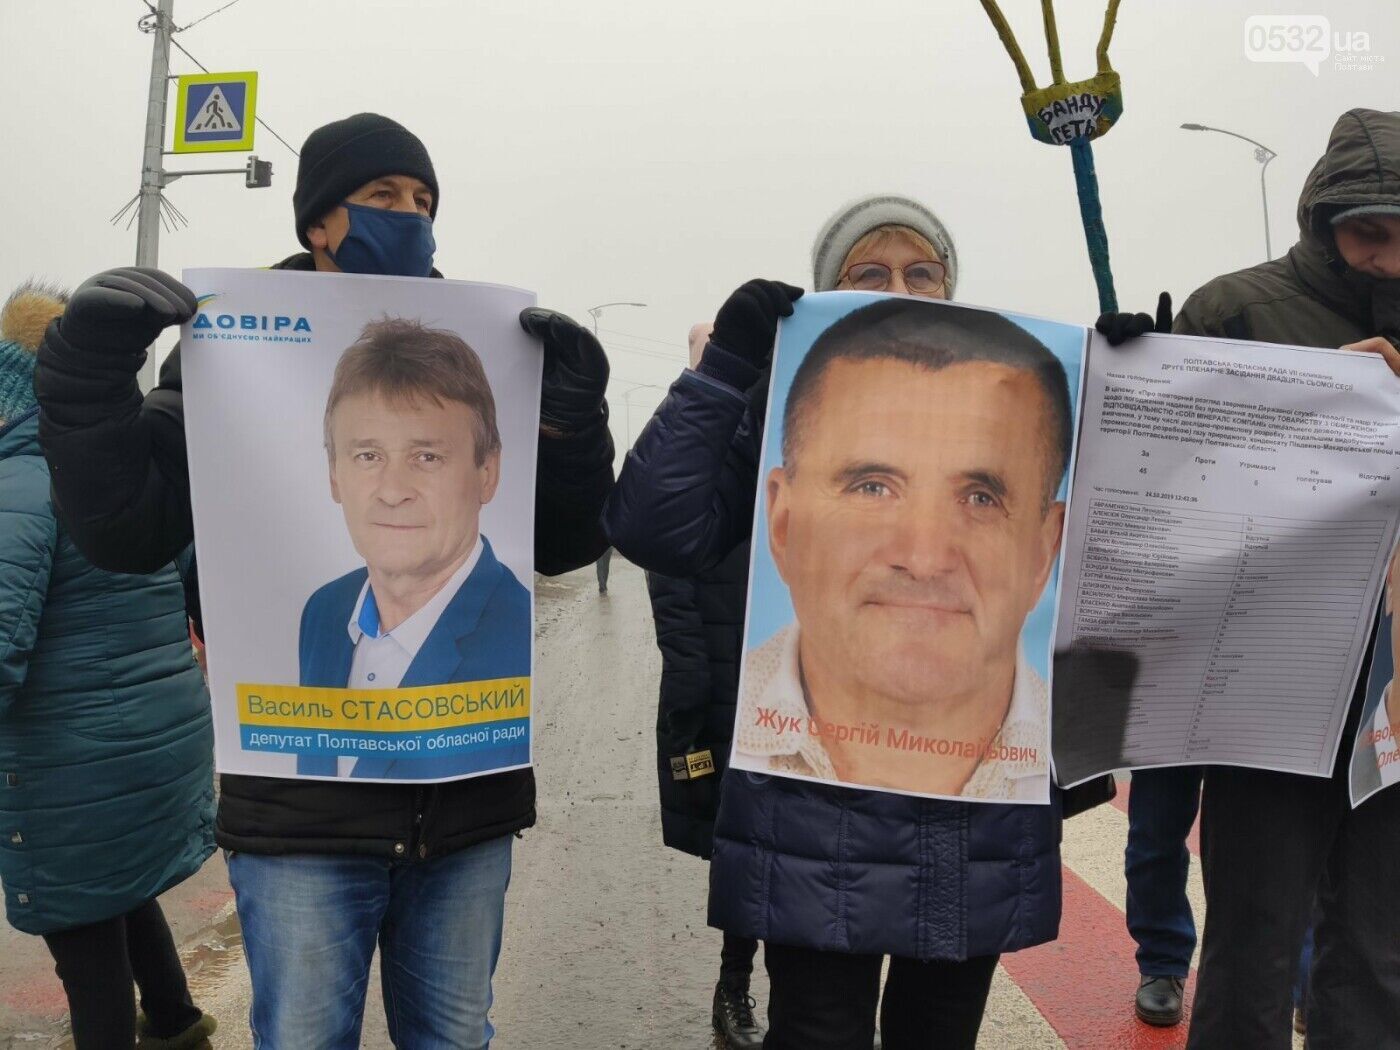 В Україні пройшли протести проти підвищення тарифів: перекрили державні траси